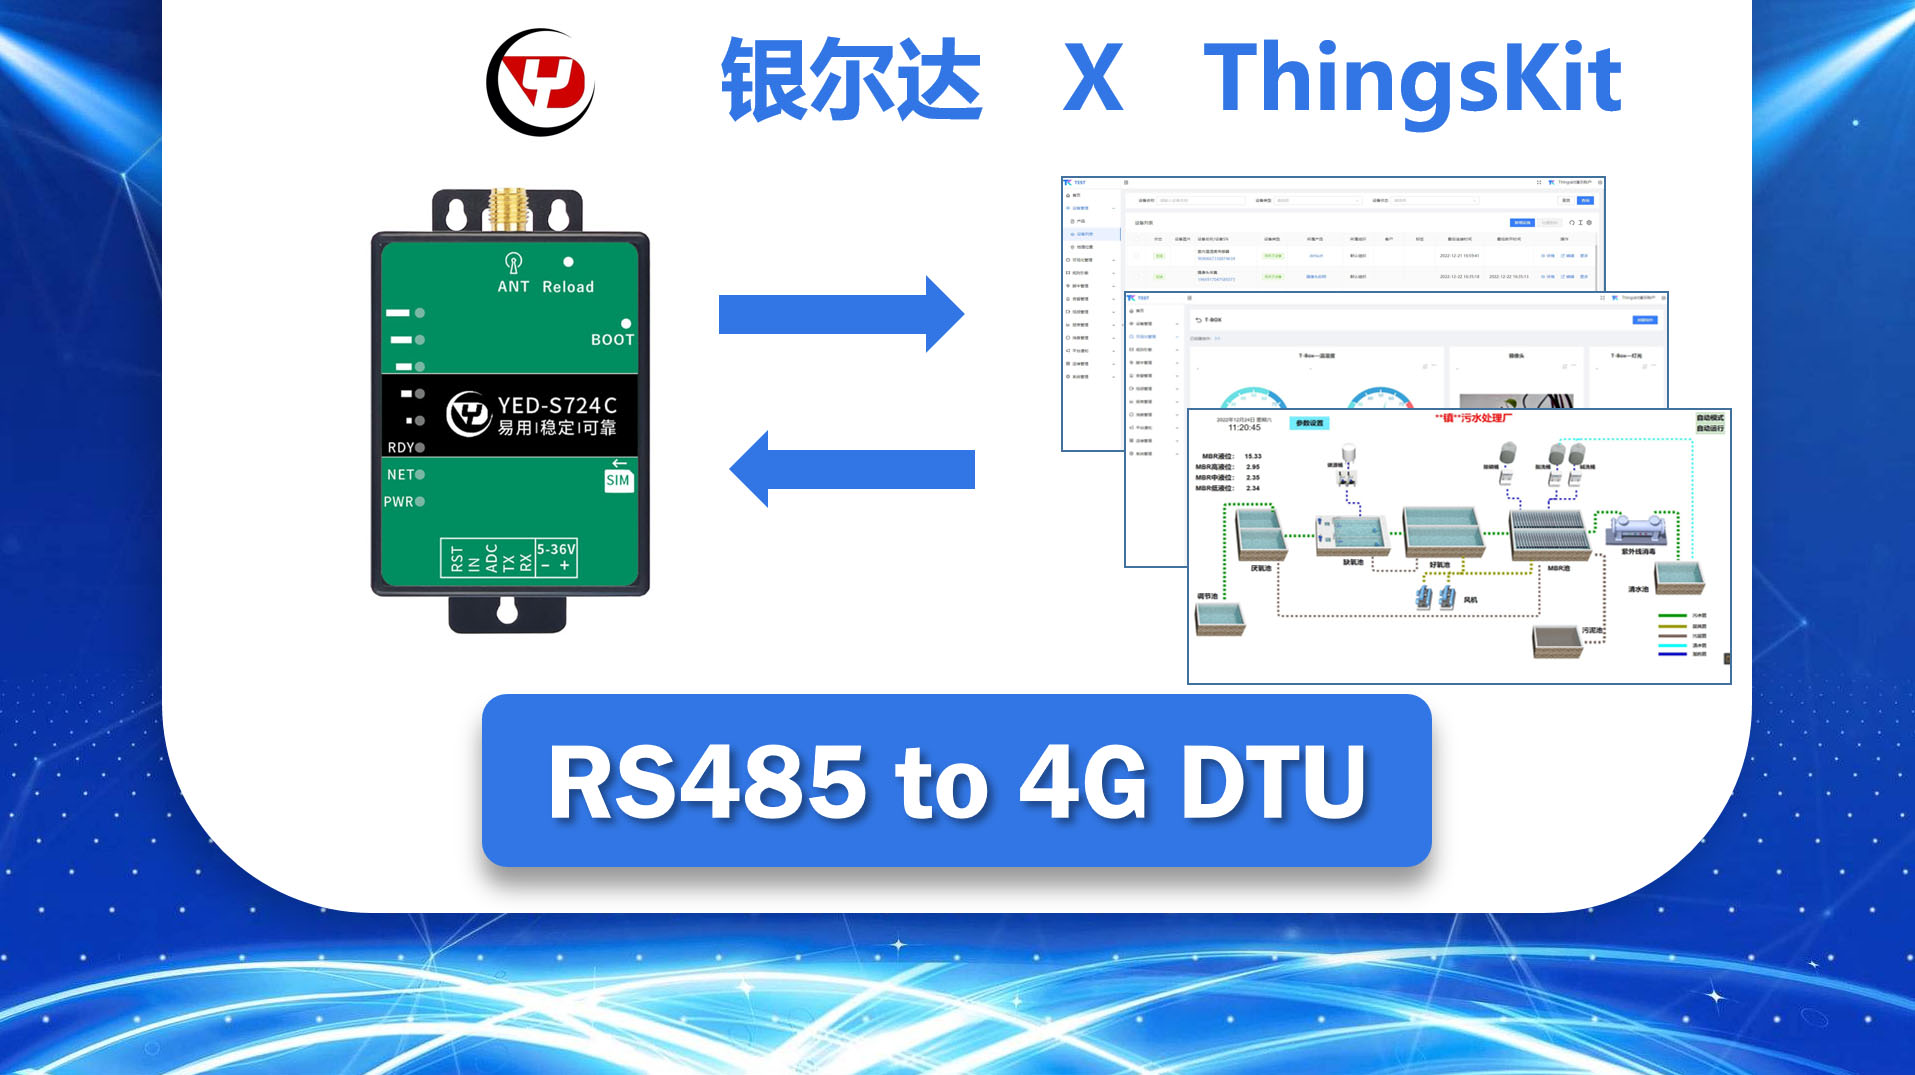 最佳实践：银尔达YED-S724 网红4G DTU 接入 ThingsKit 物联网平台